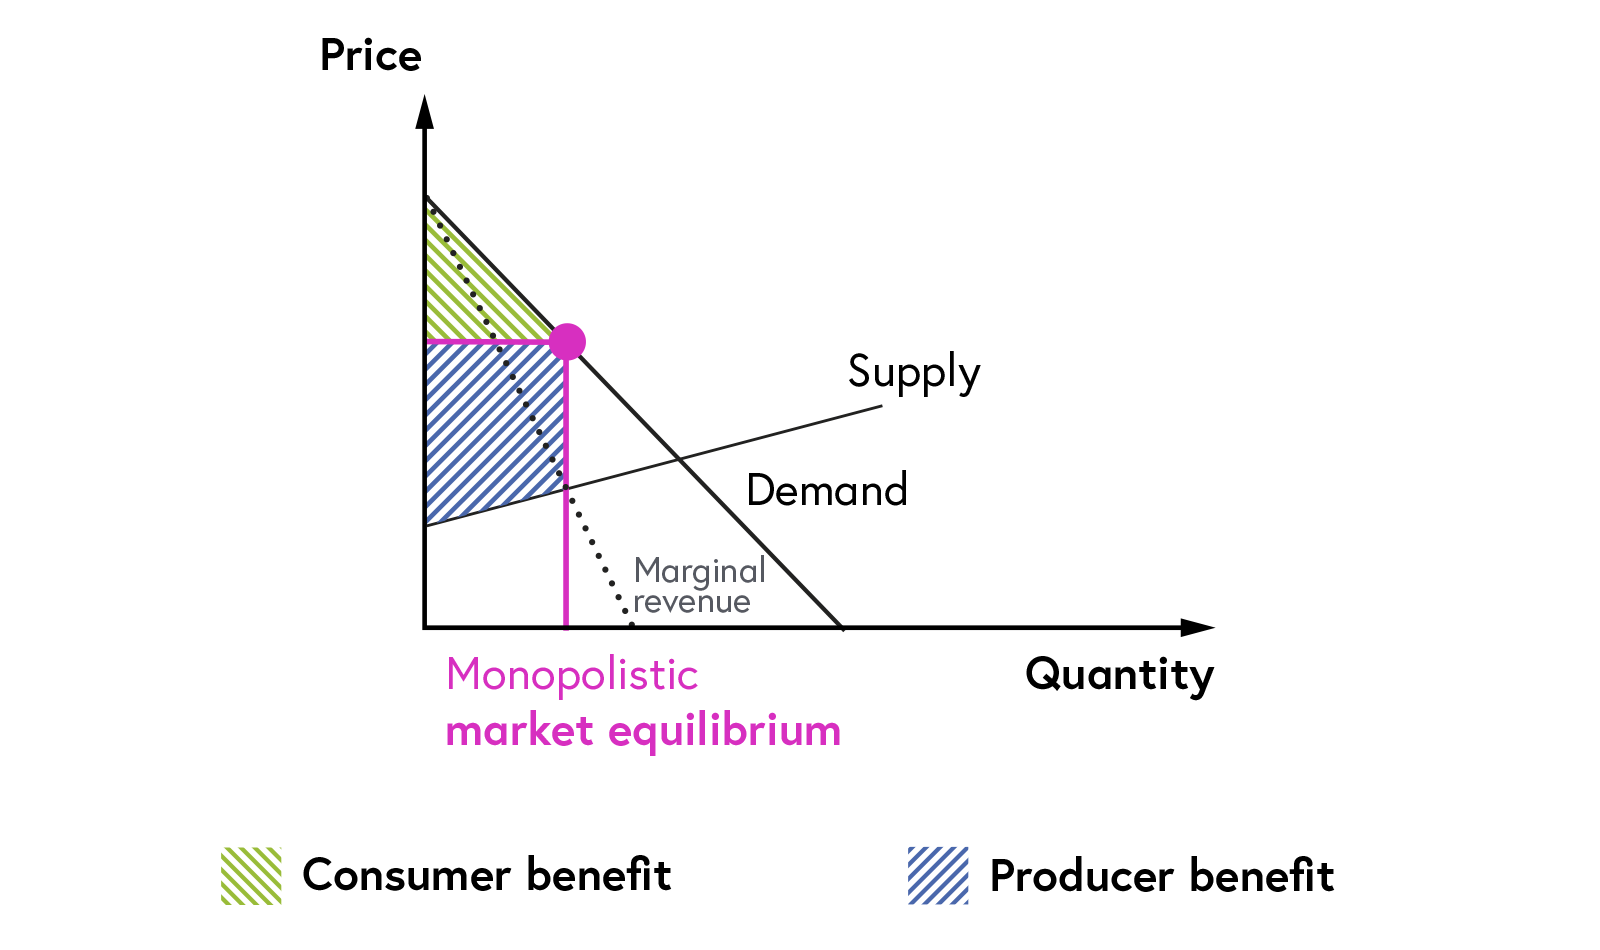 Monopolistic market equilibrium